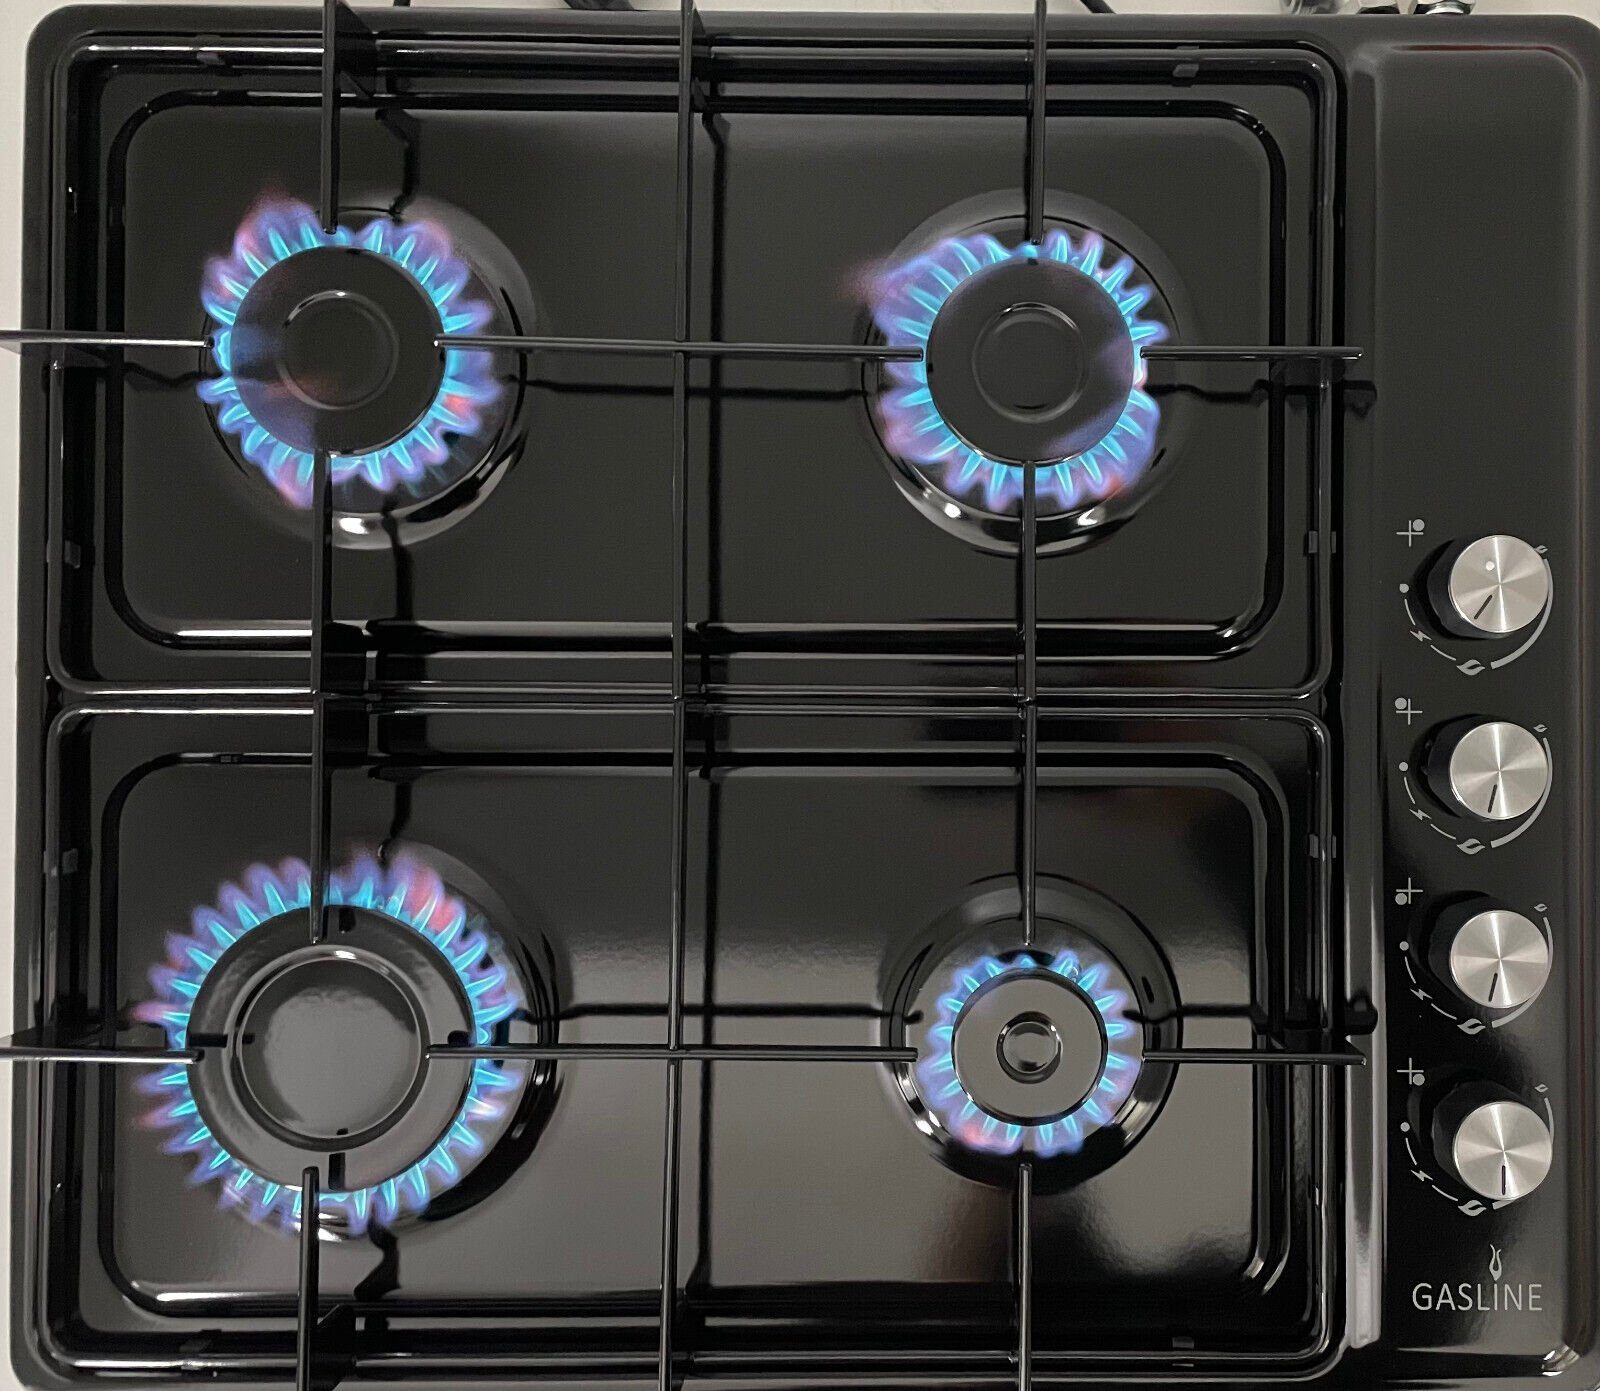 Gasline Gas-Kochfeld Tischkocher schwarz mit rutschfeste Gummifüße, elektrische Zündung und Zündsicherung, 60cm breit, 4 flammig, autark GAB60LPG, Propangas 50mbar